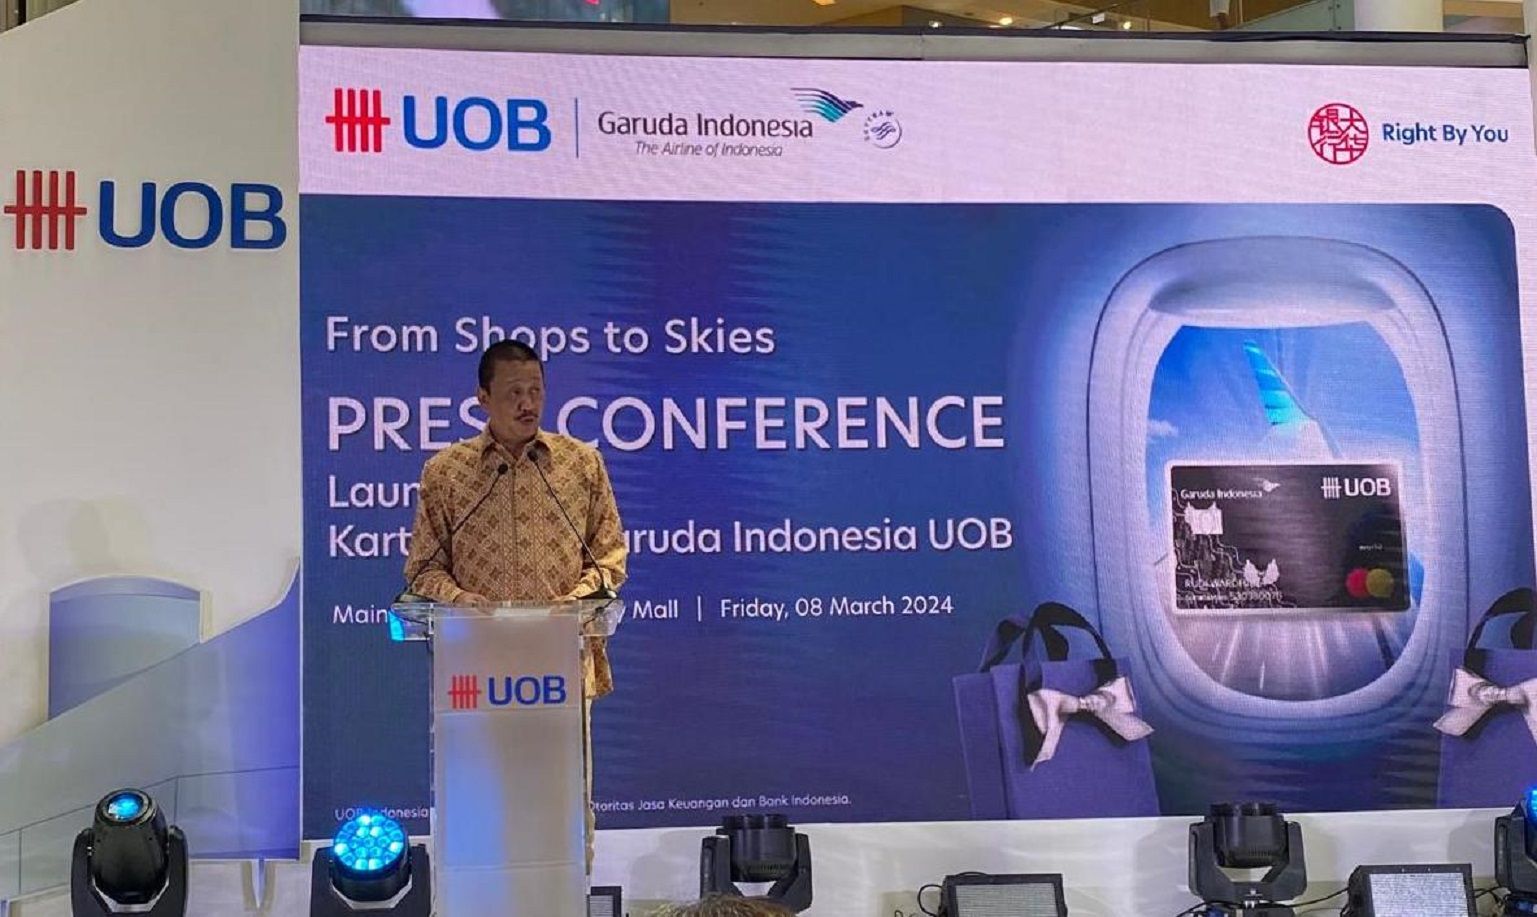 President and CEO Garuda Indonesia Irfan Setiaputra memberikan sambutan saat acara peluncuran Garuda Indonesia UOB Credit Card di Gandaria City, Jakarta, Jumat (8/3/2024). Sumber: Lucius GK